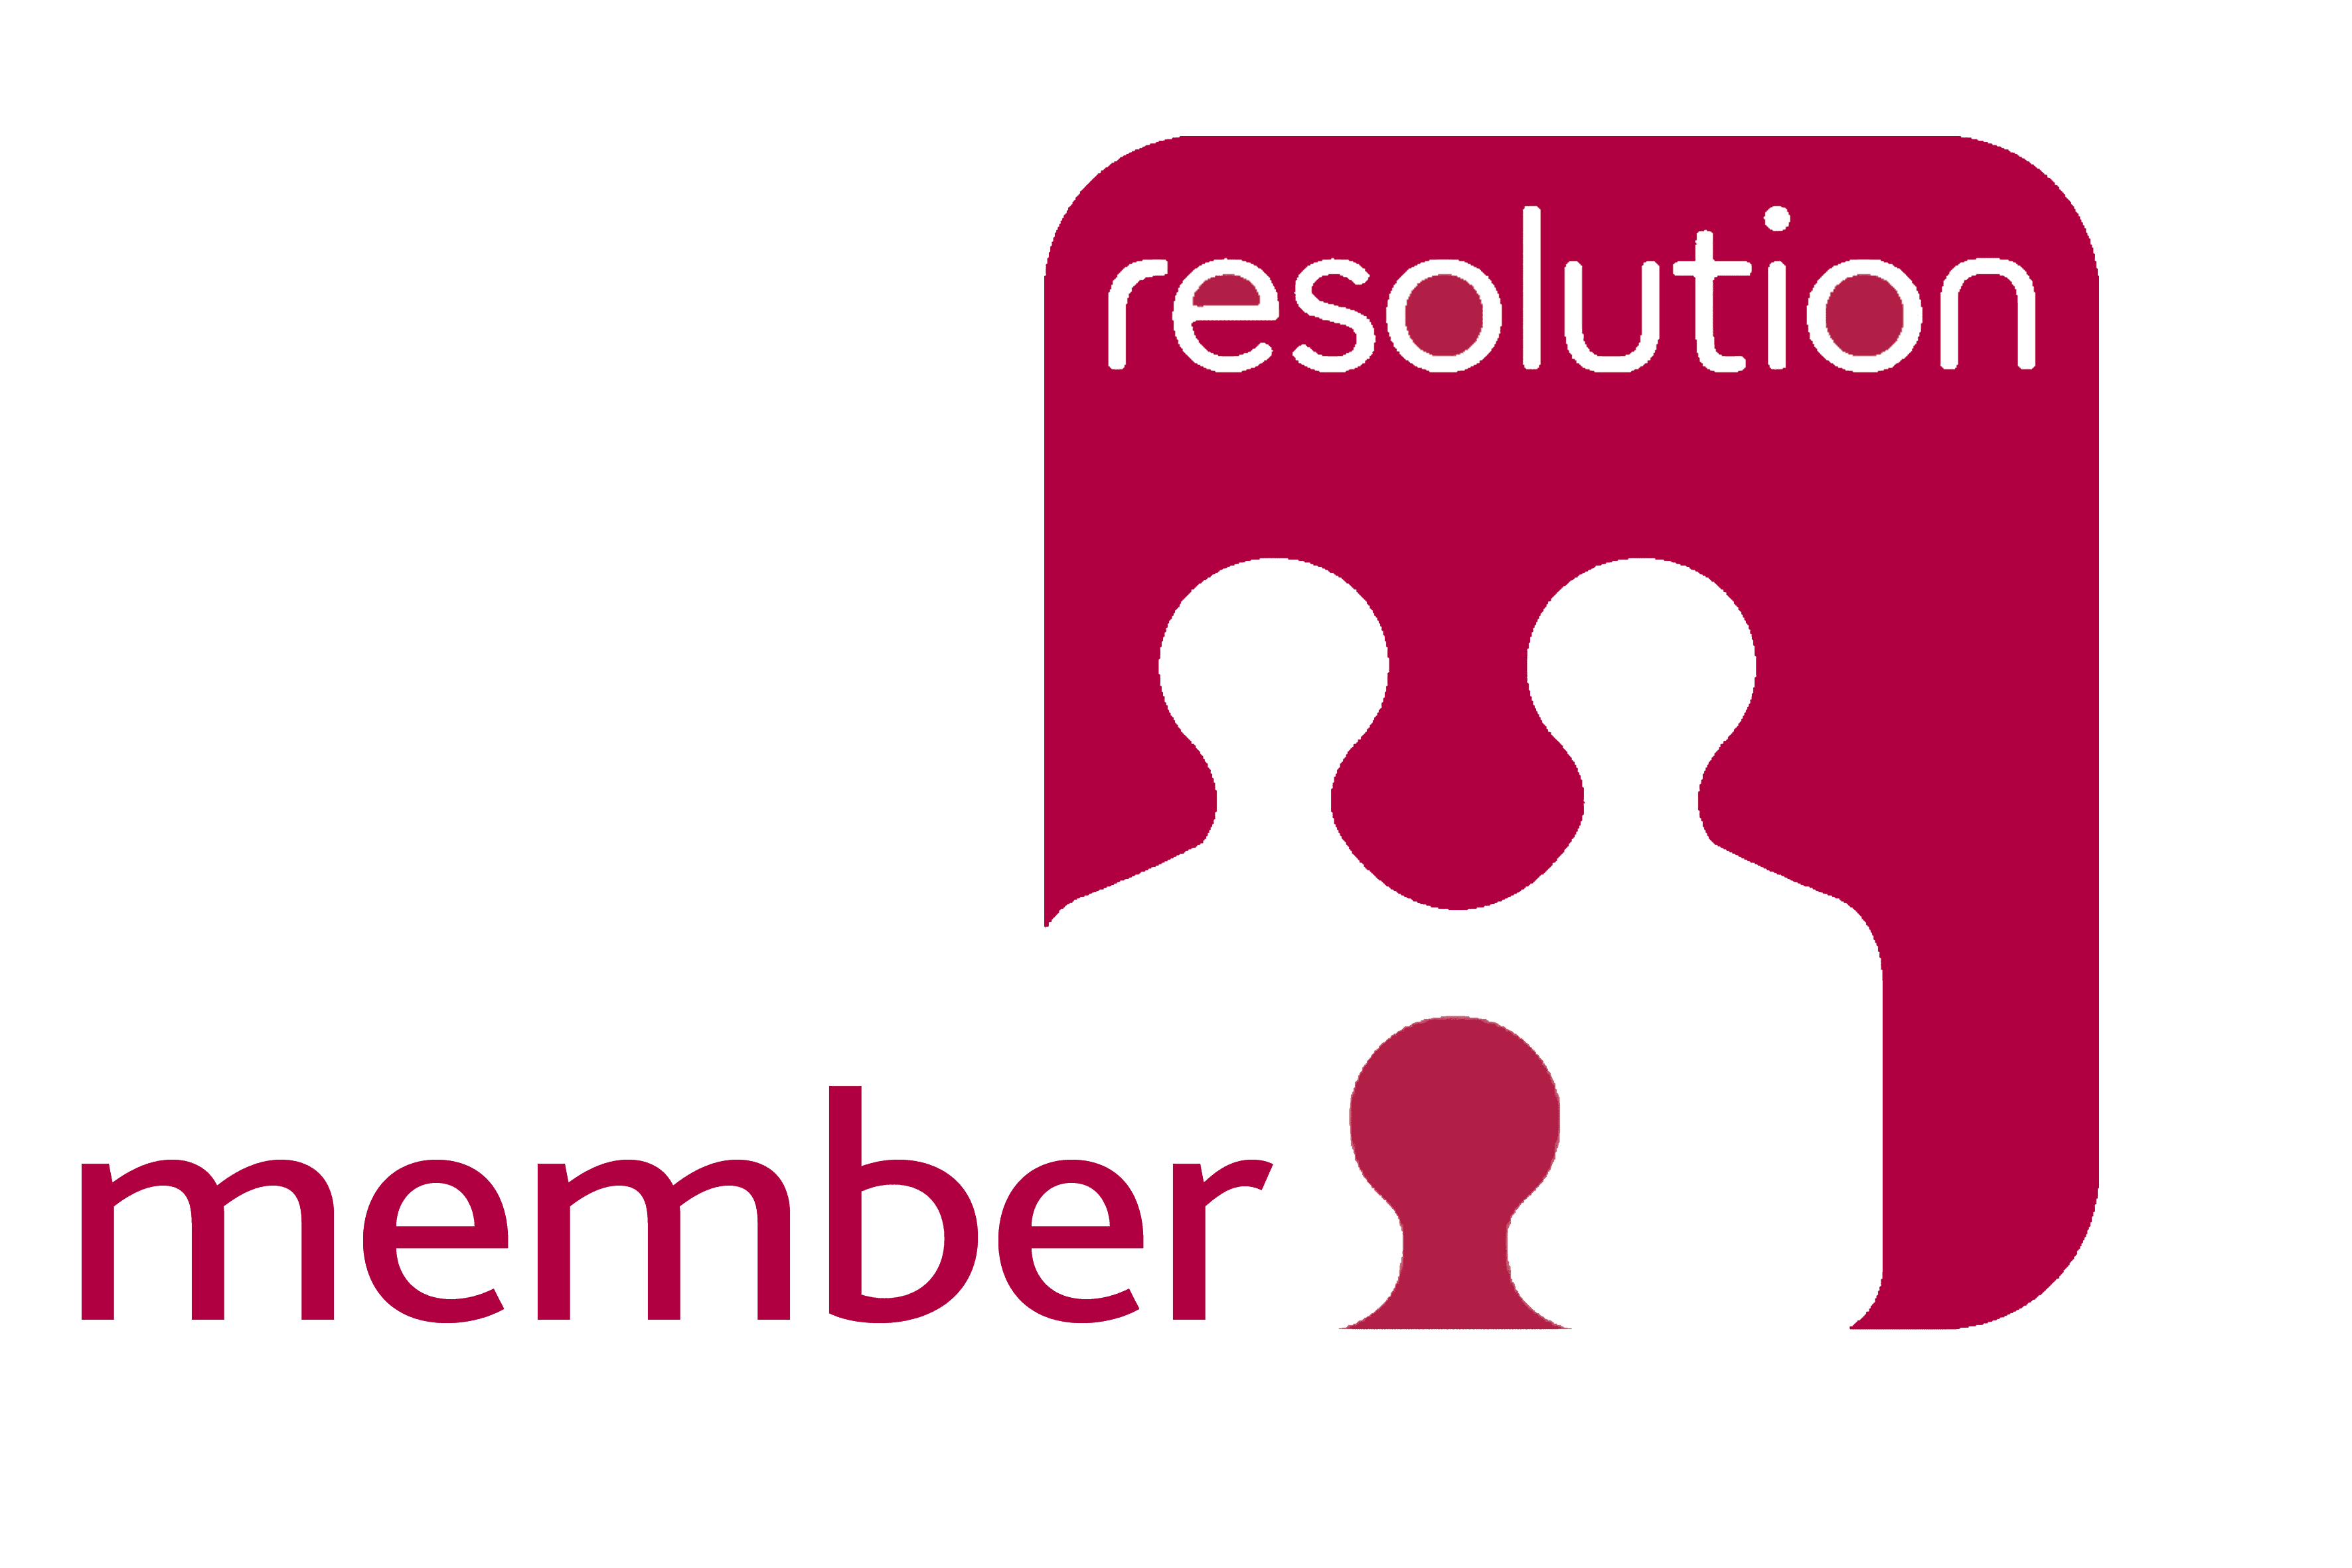 resolution member logo